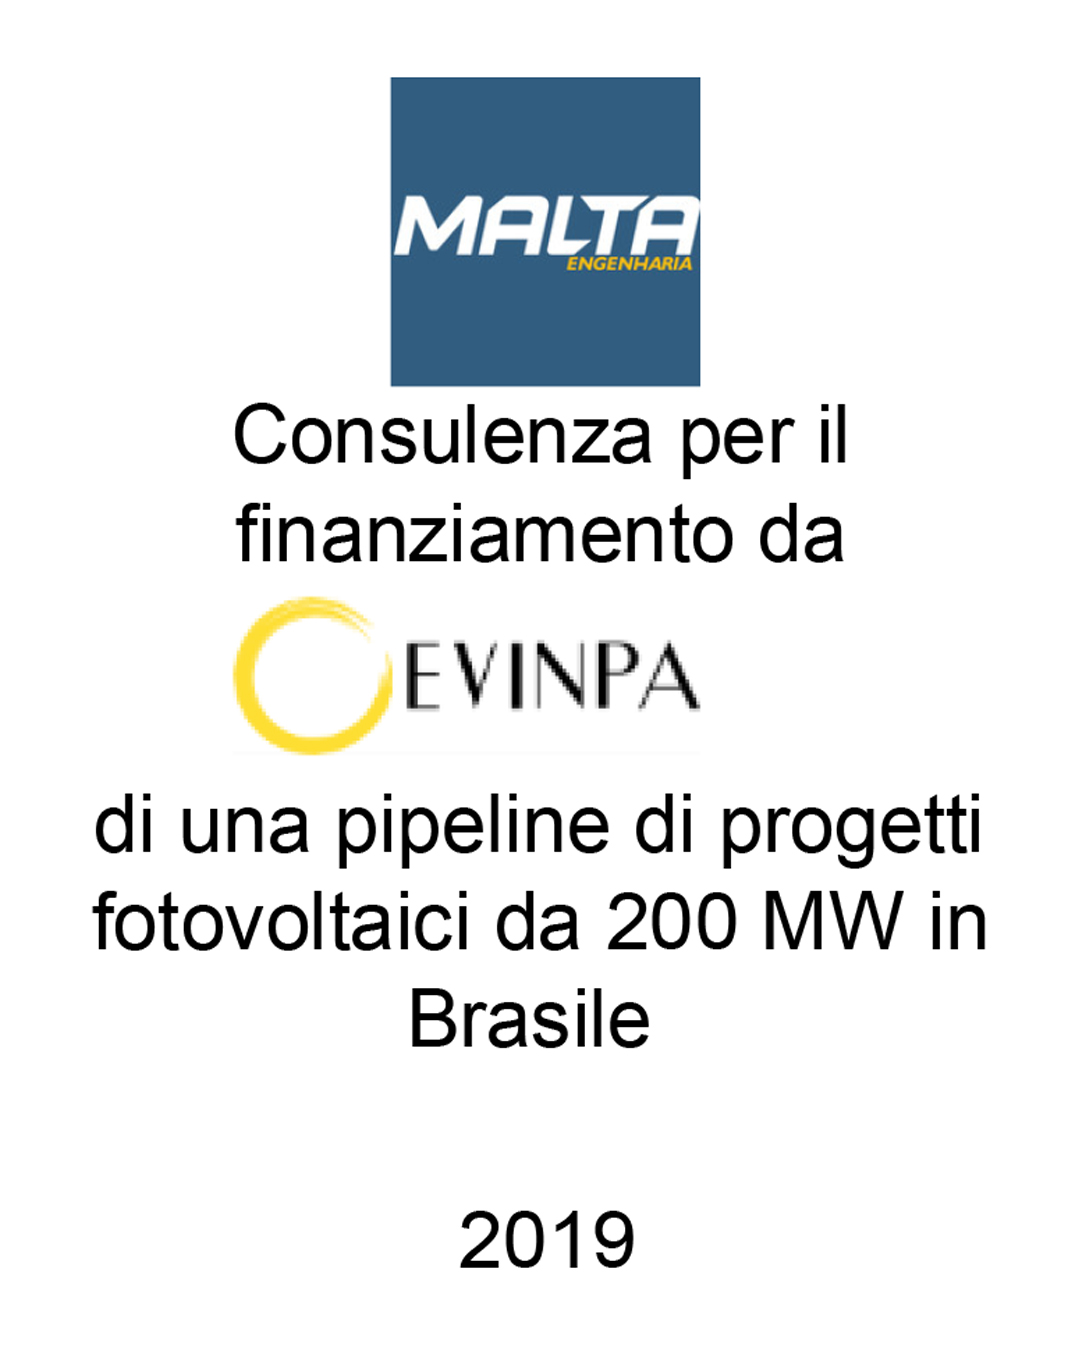 Consulente di D. Malta Faria EPP (Brasile) nella finalizzazione di un accordo di co-sviluppo con Evergreen Investment Partners - EVINPA (UK) per lo sviluppo di una pipeline fotovoltaica da 200 MW in Brasile. Incarico completato nel 2019.